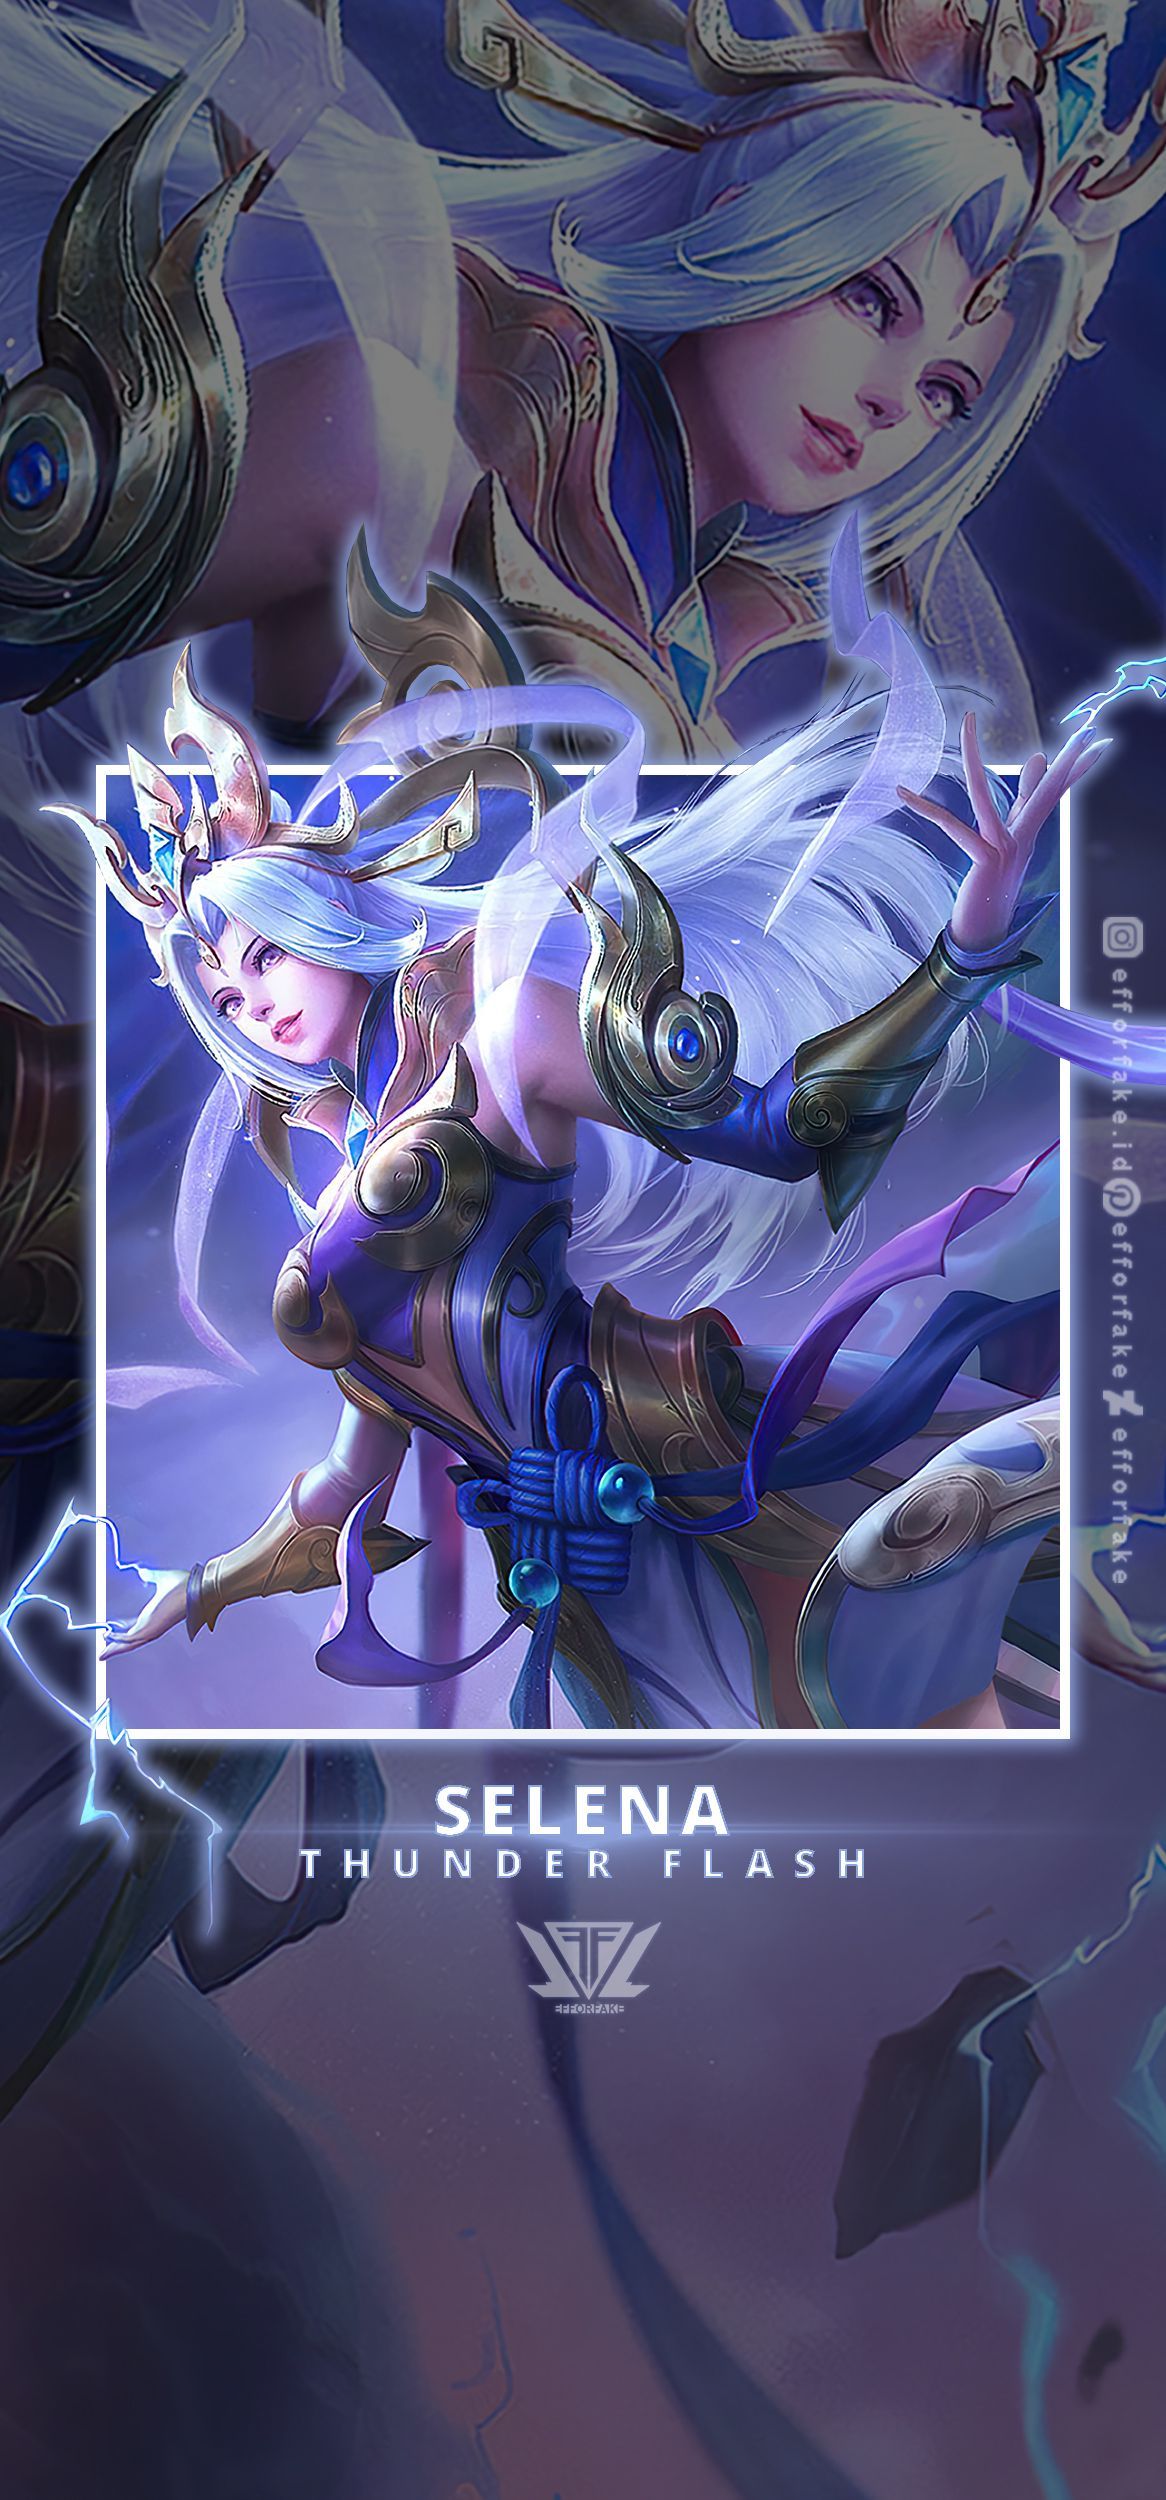 Selena Thunder Flash Wallpaper. Mobile legend wallpaper, Alucard mobile legends, Flash wallpaper